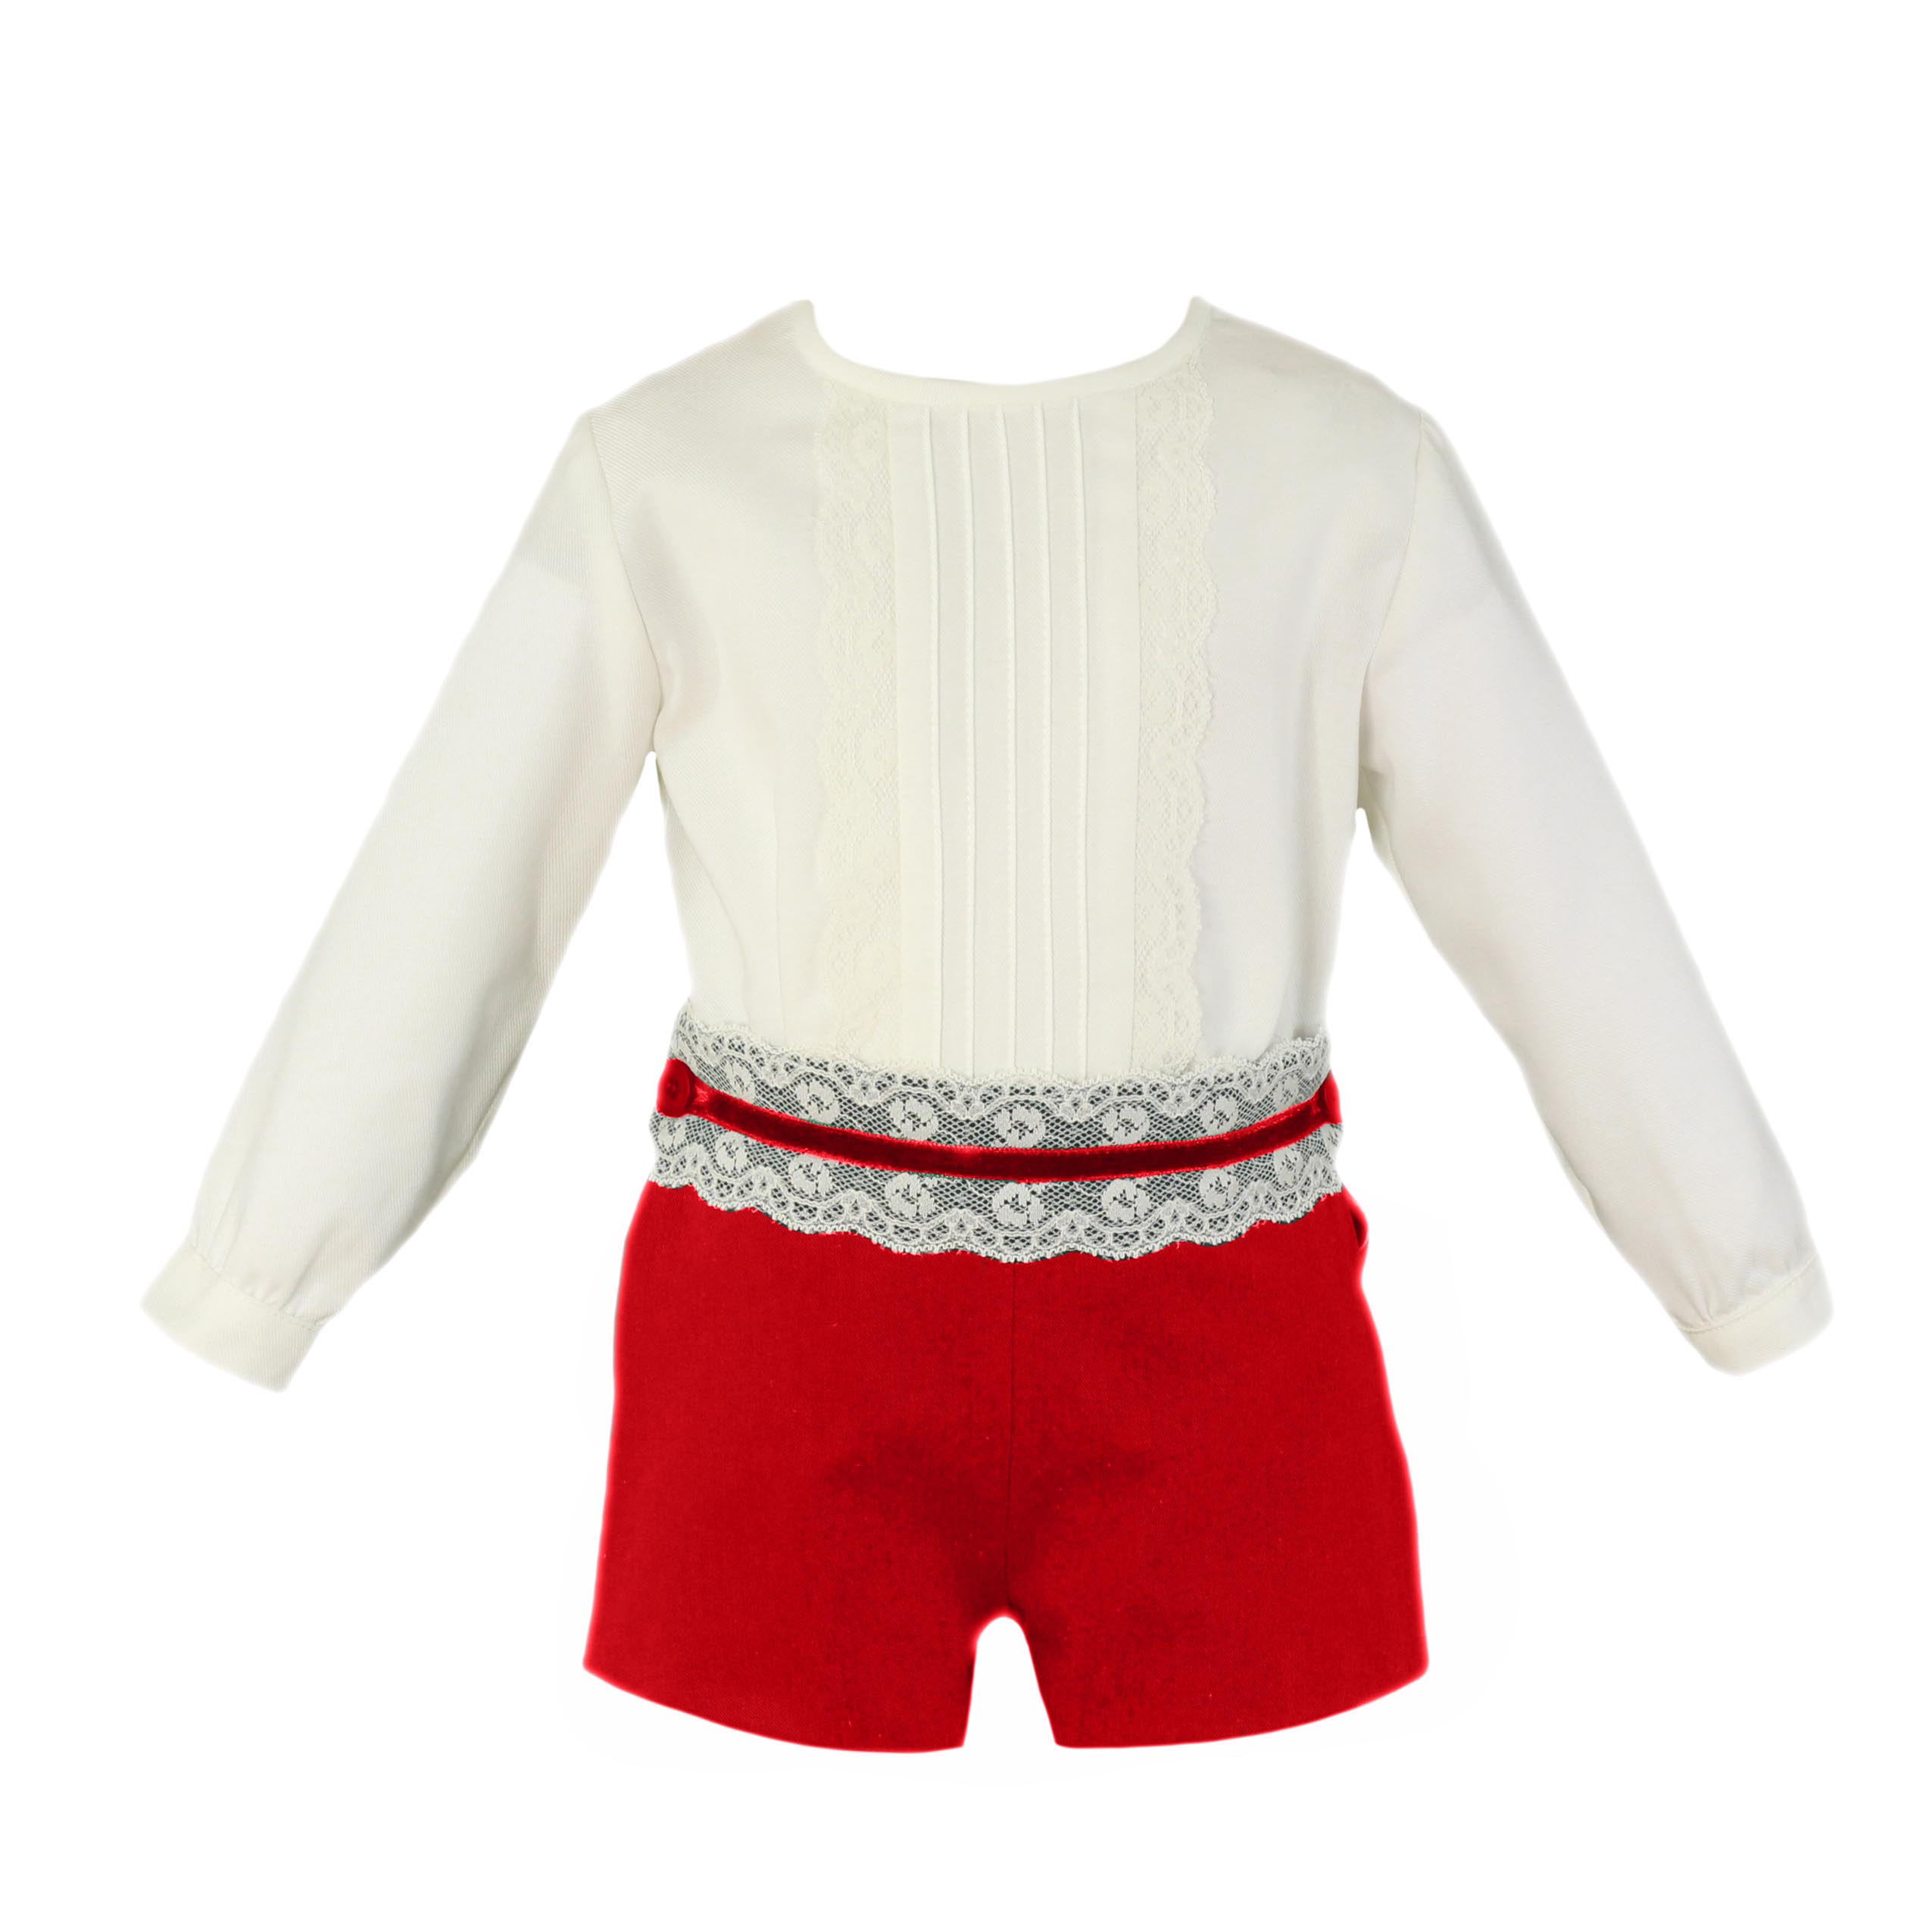 conjunto bebe niño ceremonia blanco y rojo Miranda 0127 - La boutique de AyA